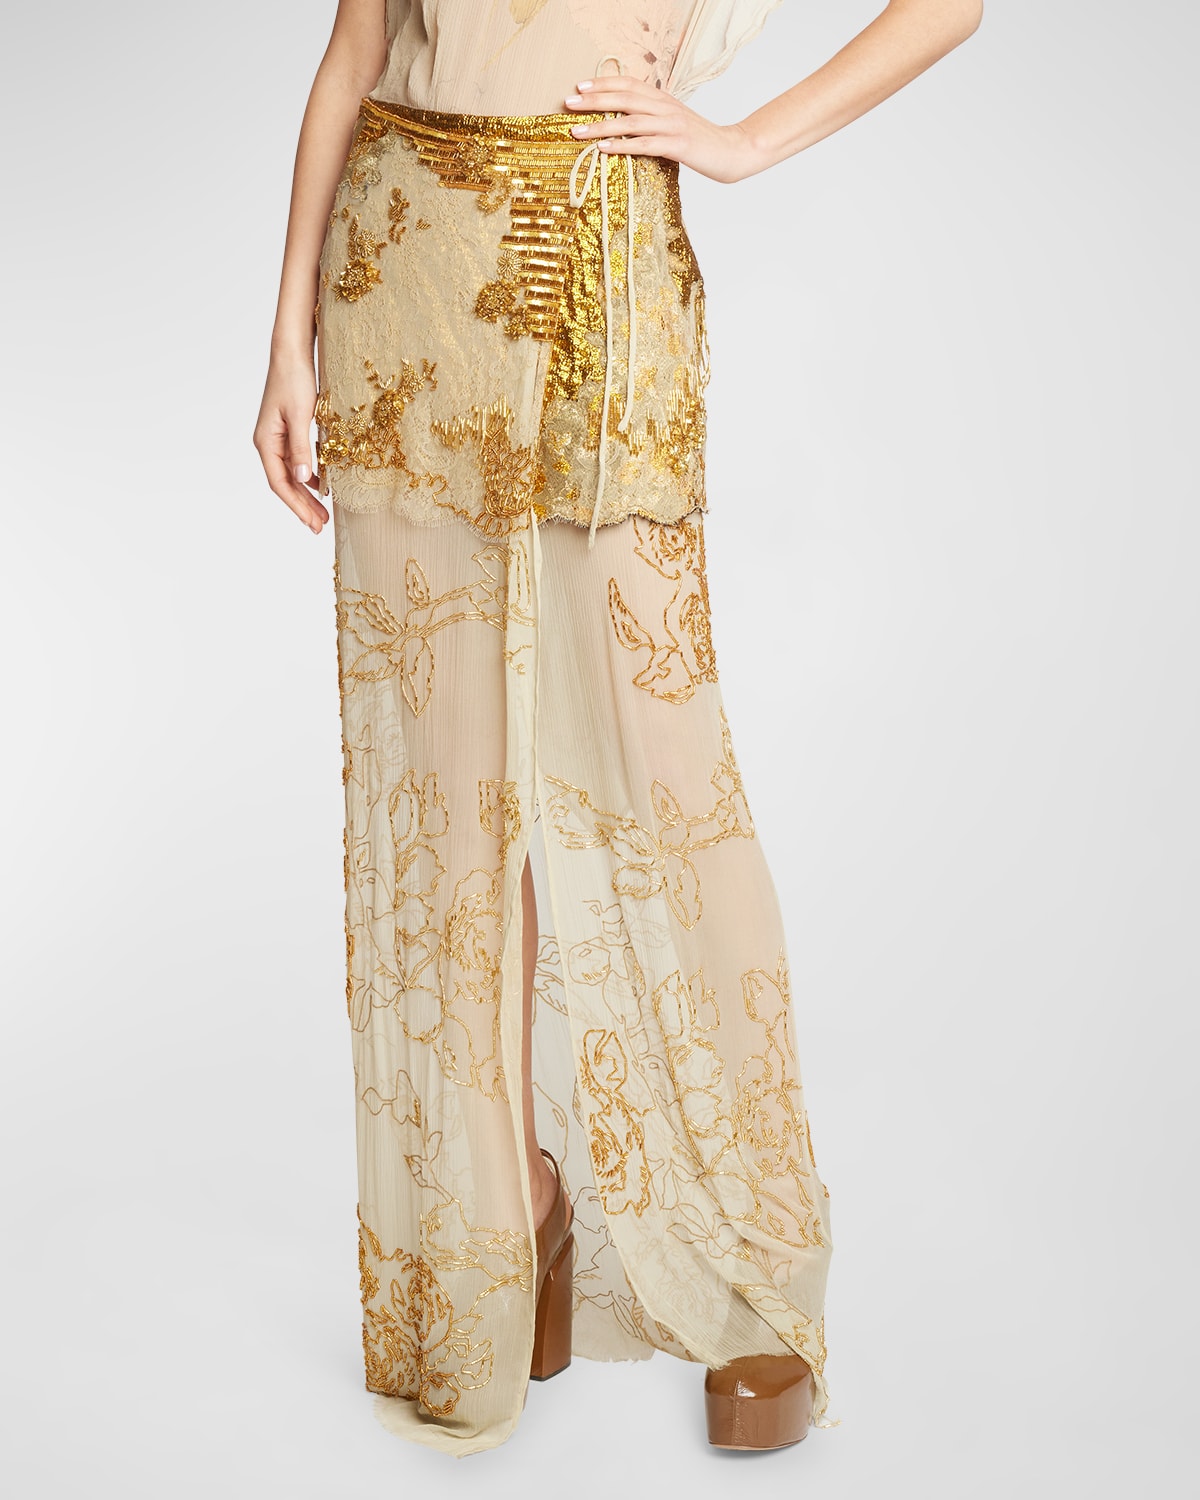 Silene Beaded Lace-Overlay Maxi Wrap Skirt